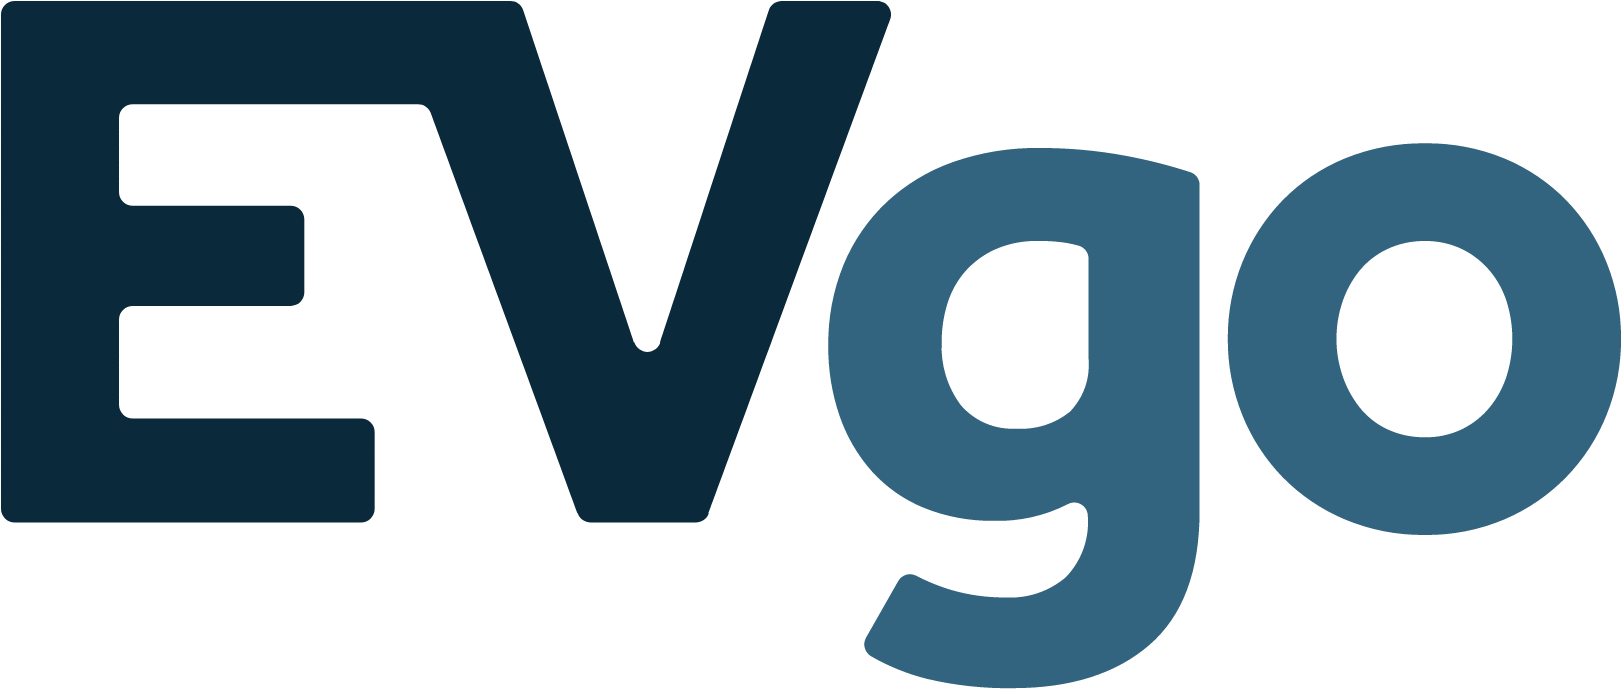 EVgo logo (transparent PNG)